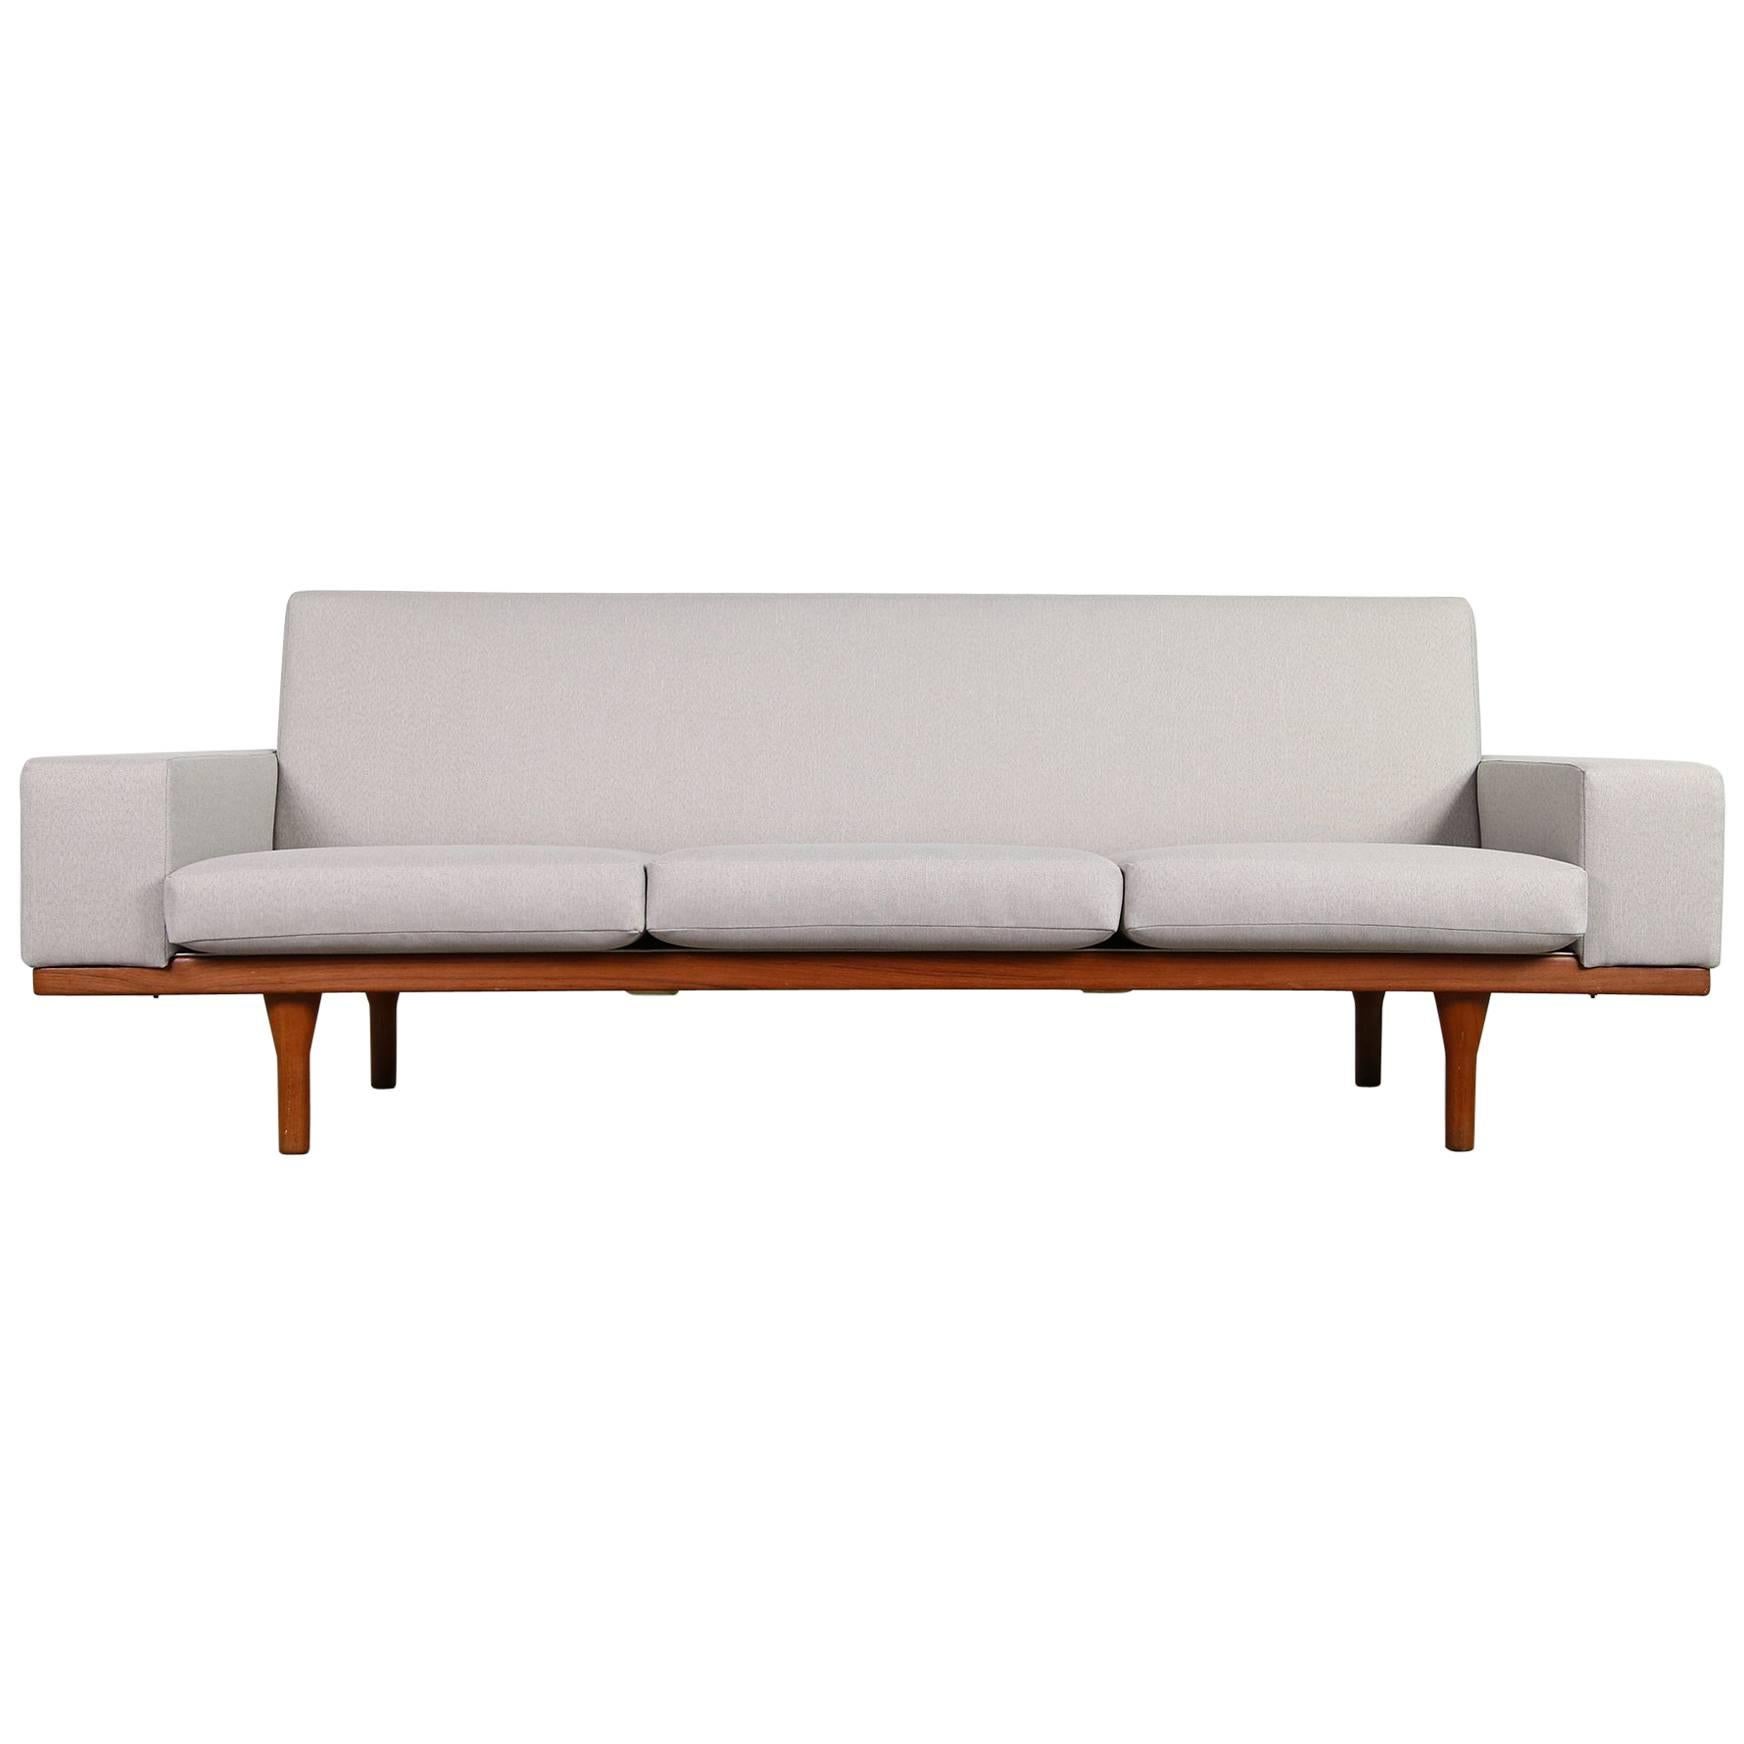 1960s Illum Wikkelso Teak Lounge Sofa Model 50-3 Soren Willadsen Danish Modern For Sale